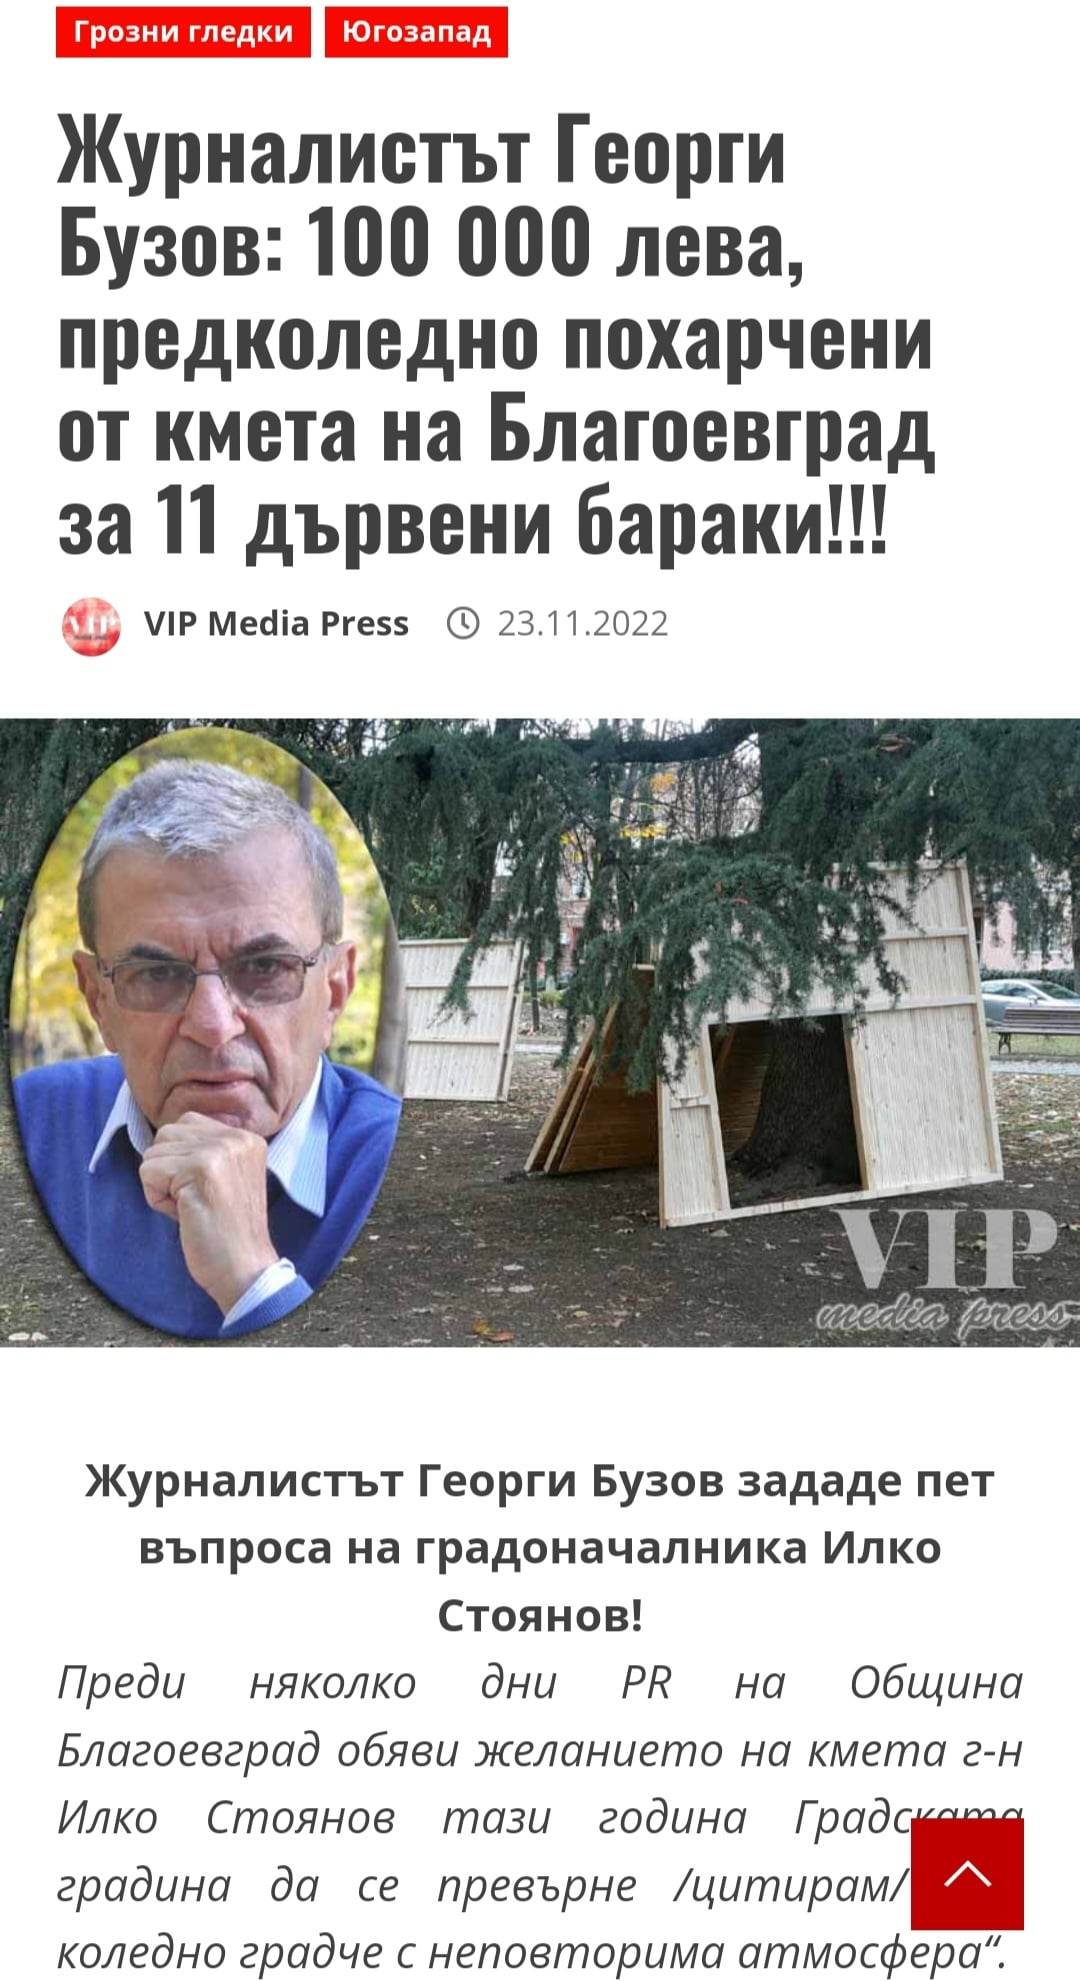 Журналистът Георги Бузов: 100 000 лева, предколедно похарчени от кмета на Благоевград за 11 дървени бараки!!!